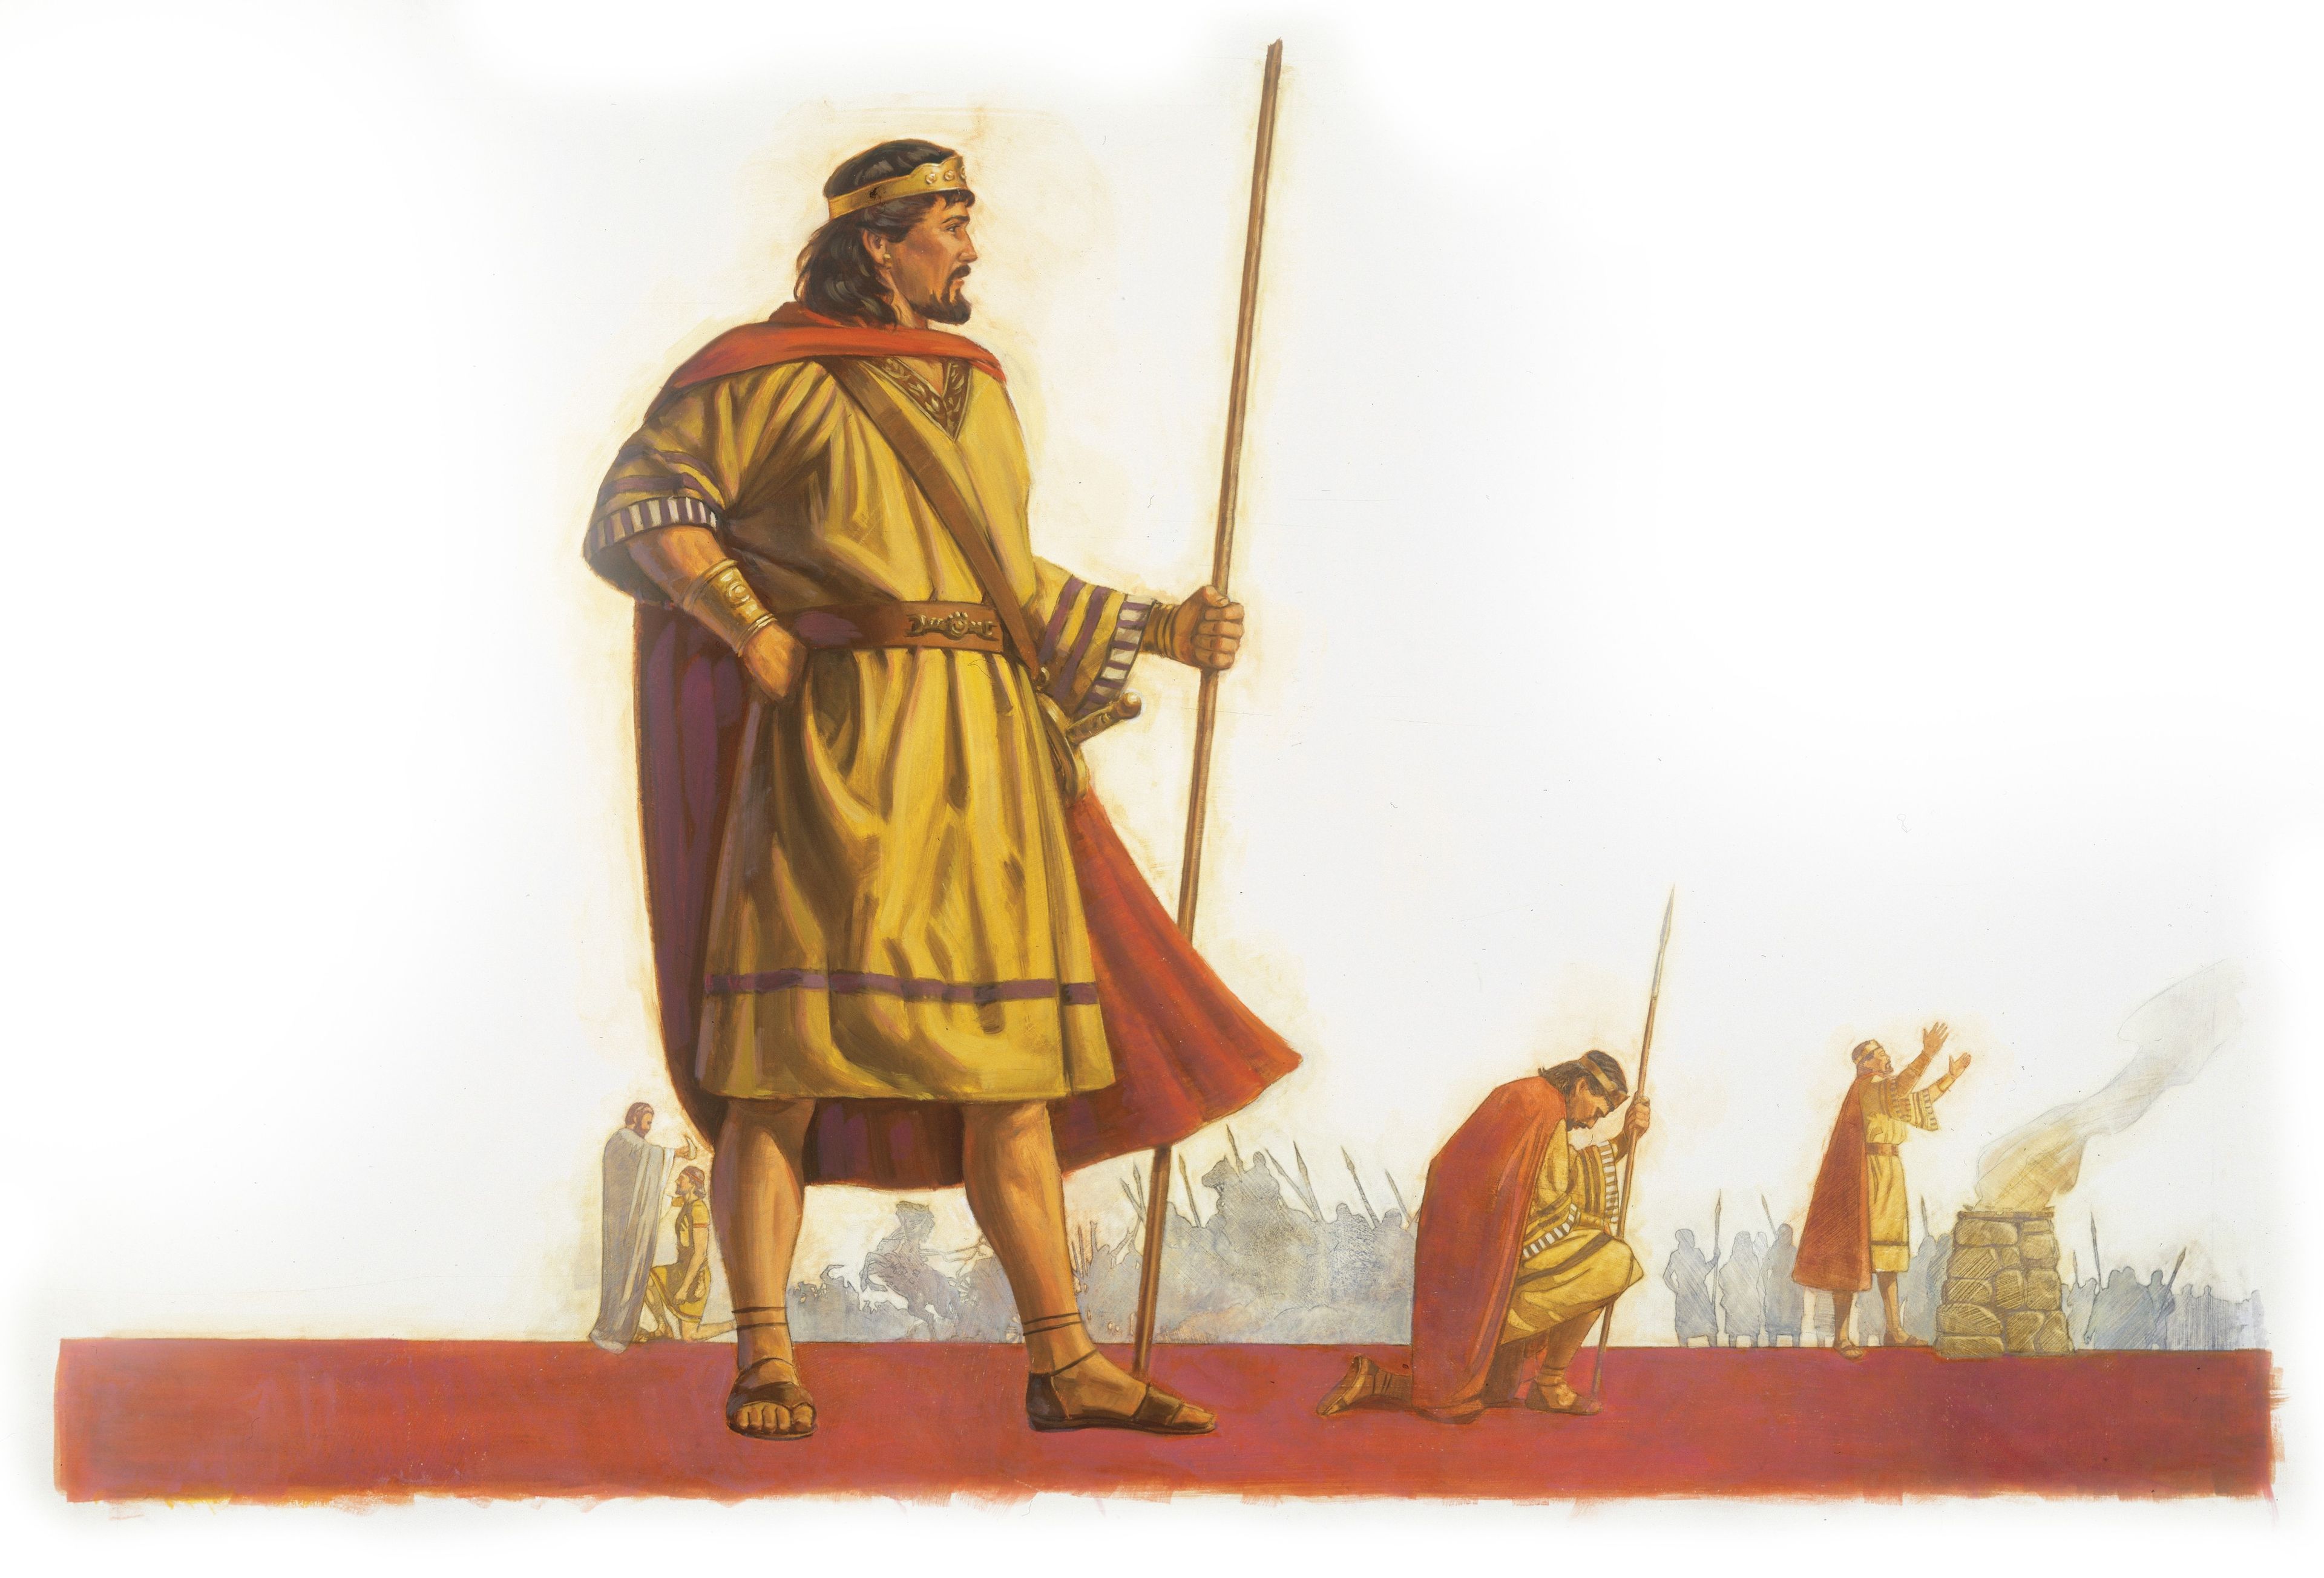 Saul Leading Israel against Their Enemies, by Robert T. Barrett